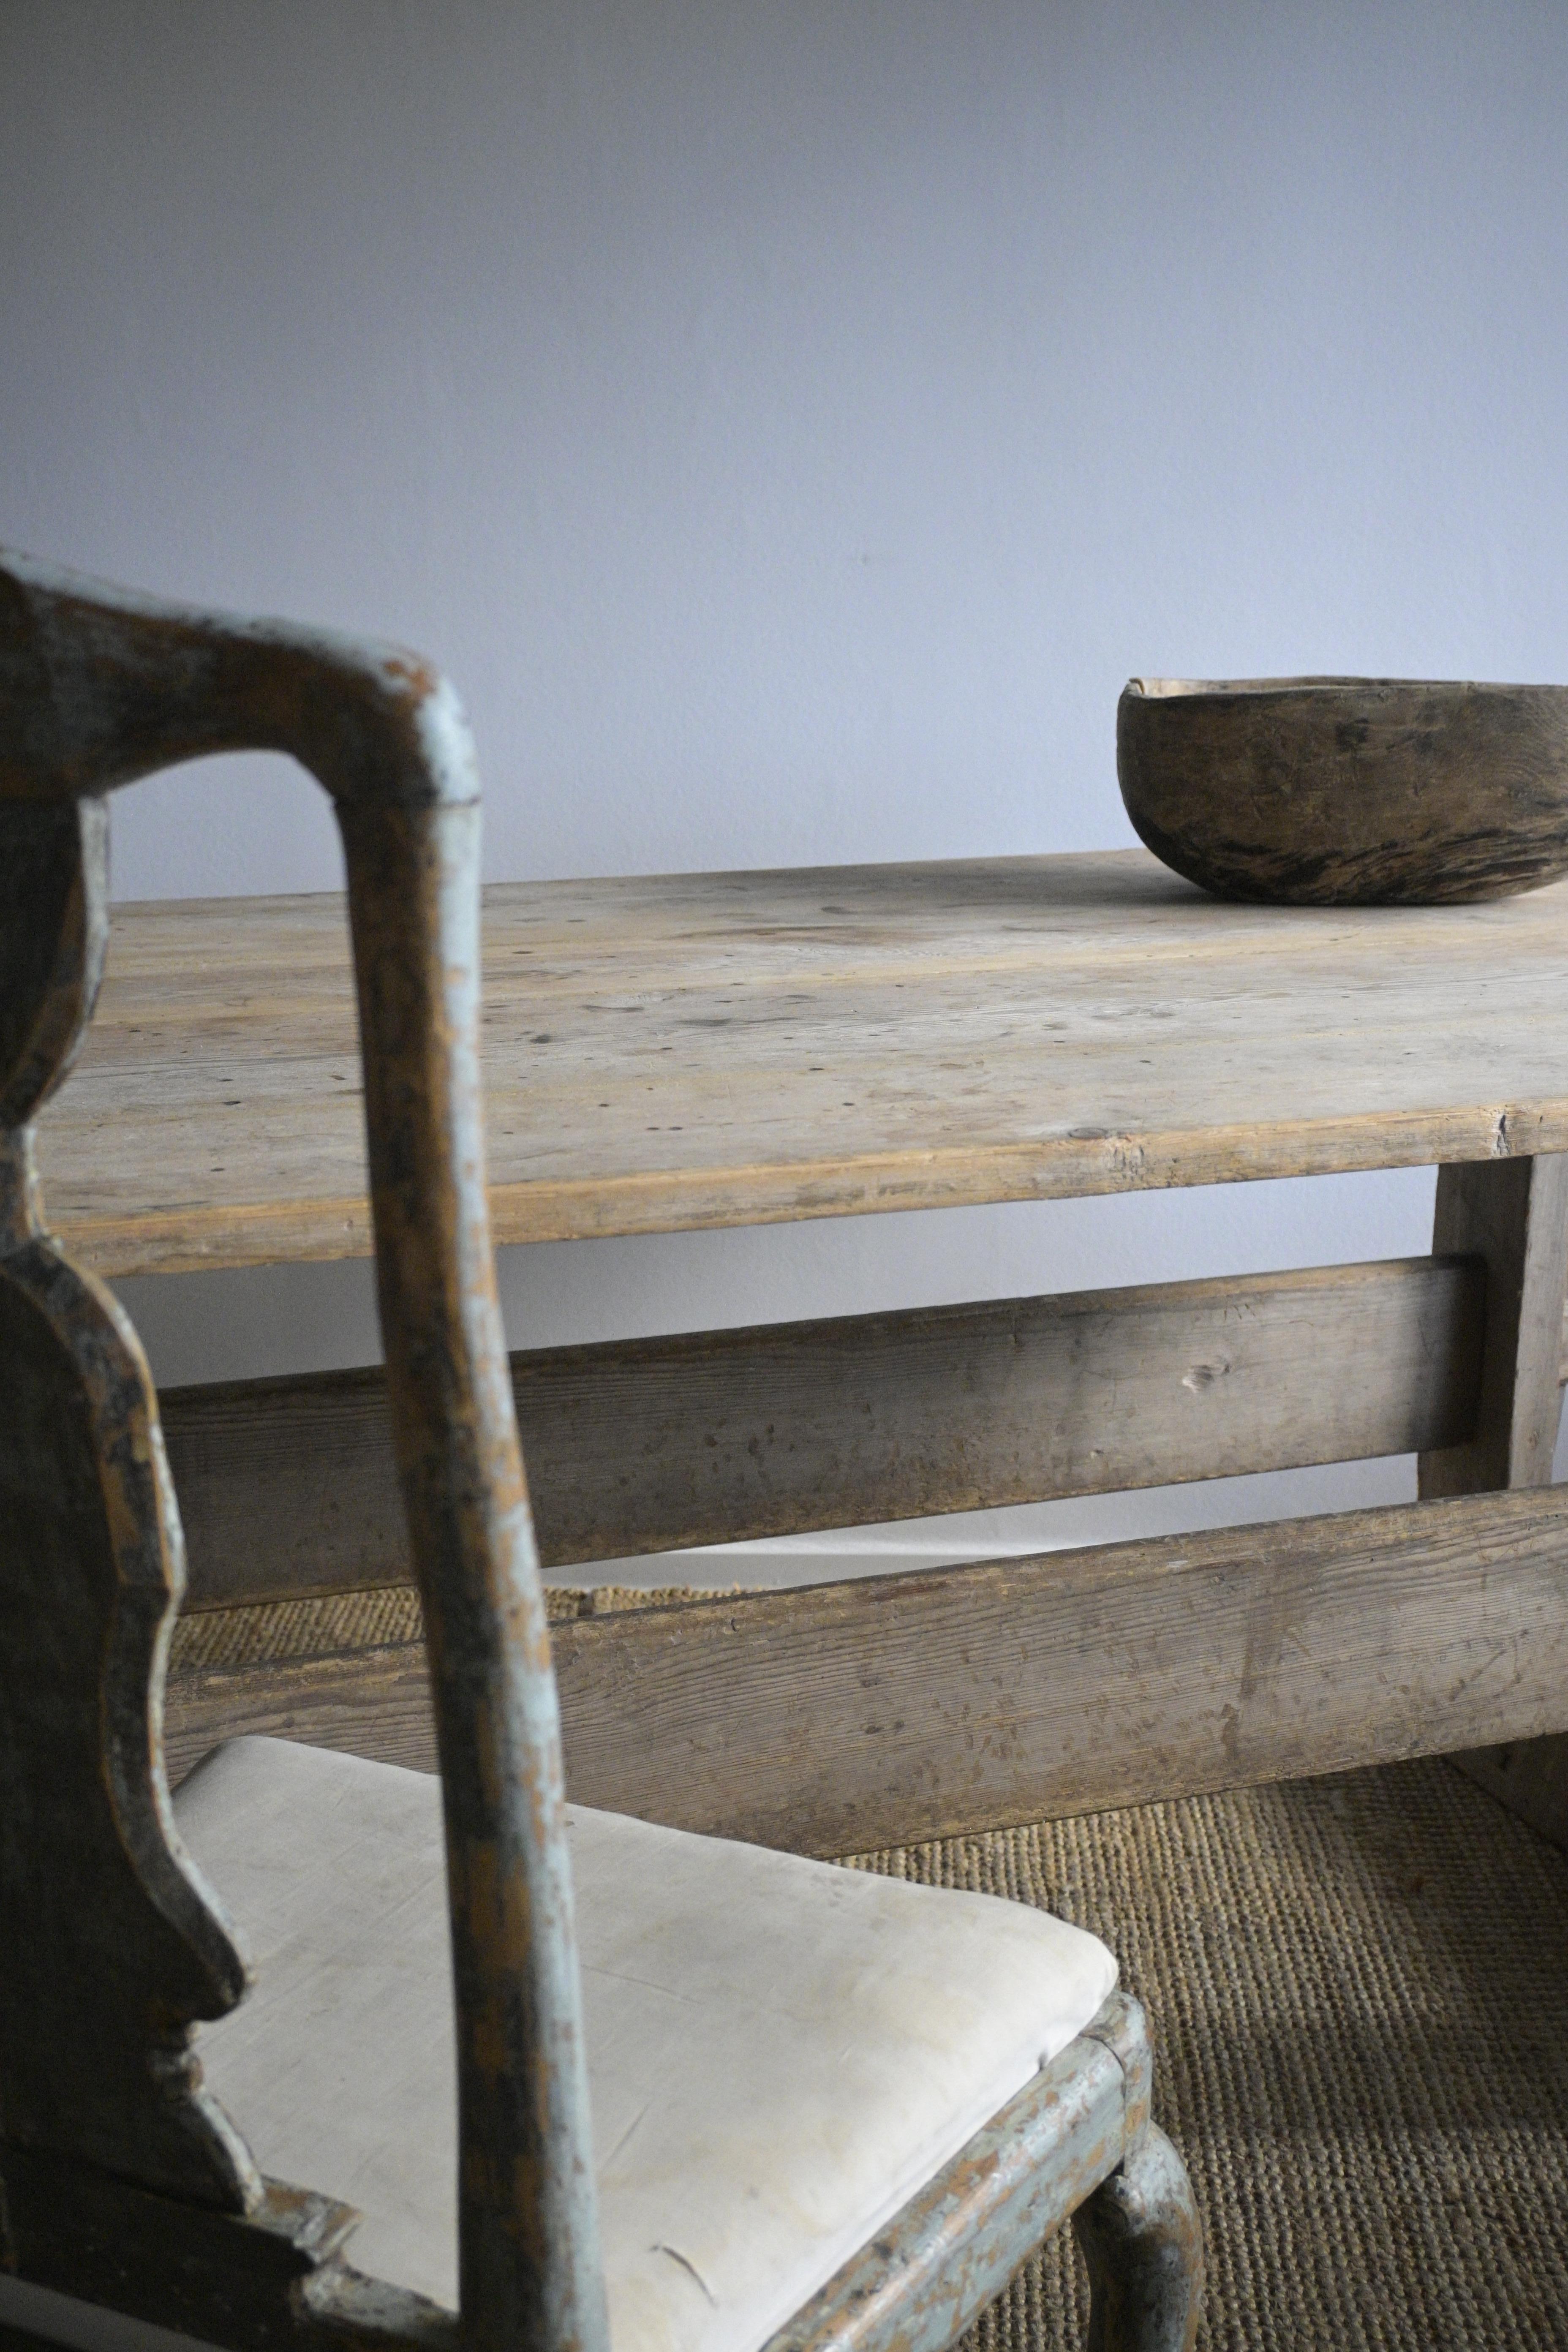 Grande table à tréteaux de la fin du XVIIIe siècle en Suède.

Sa taille et sa forme en font une grande table de salle à manger idéale, qui peut facilement accueillir 8 à 10 personnes.

Les siècles lui ont donné une belle patine.

Fabriqué en